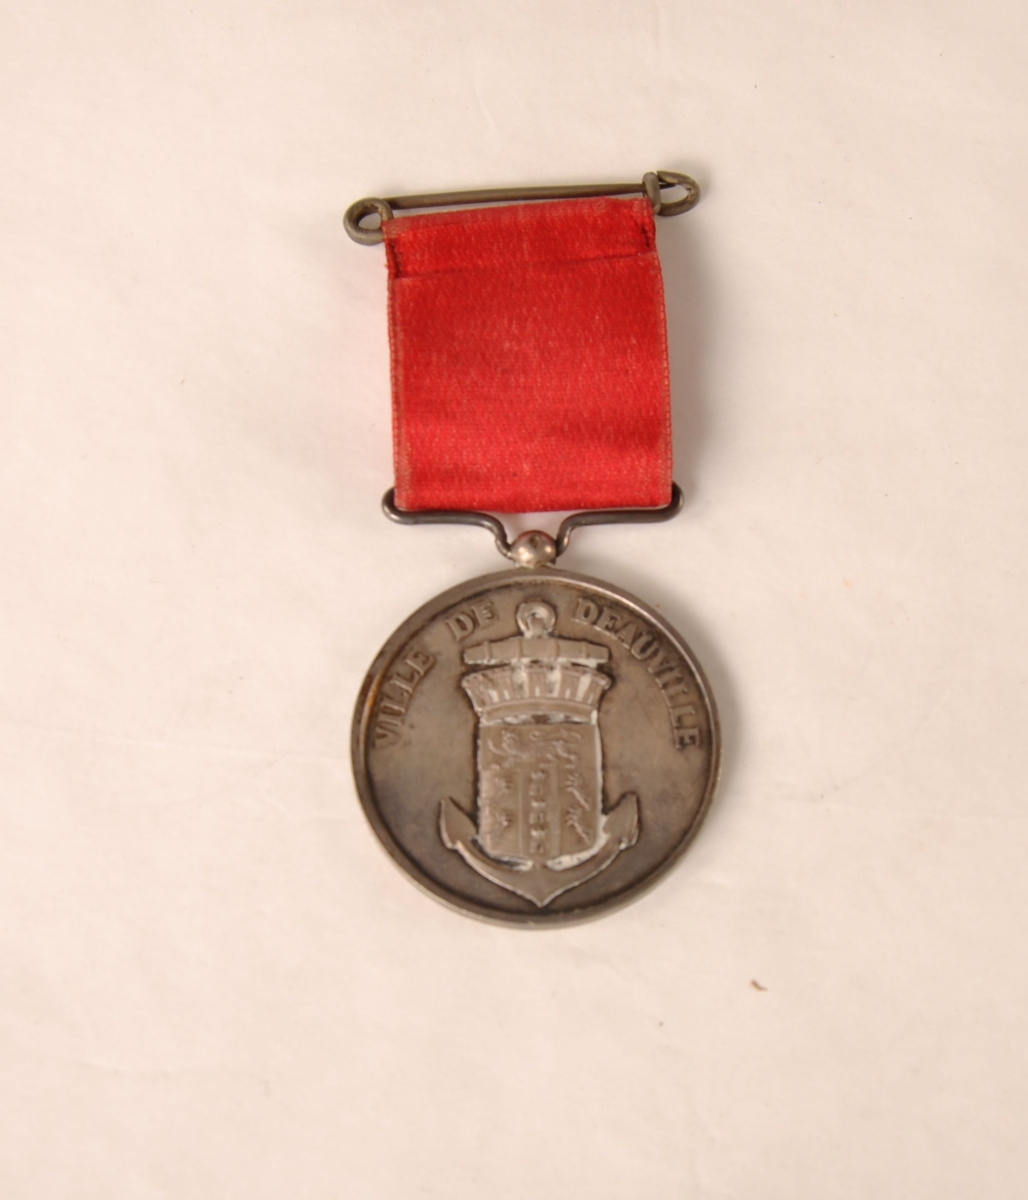 Fransk medalje til Carl Spørck for velosiped-ritt 26. august 1888, Ville de Deauville. I et rødt bånd.